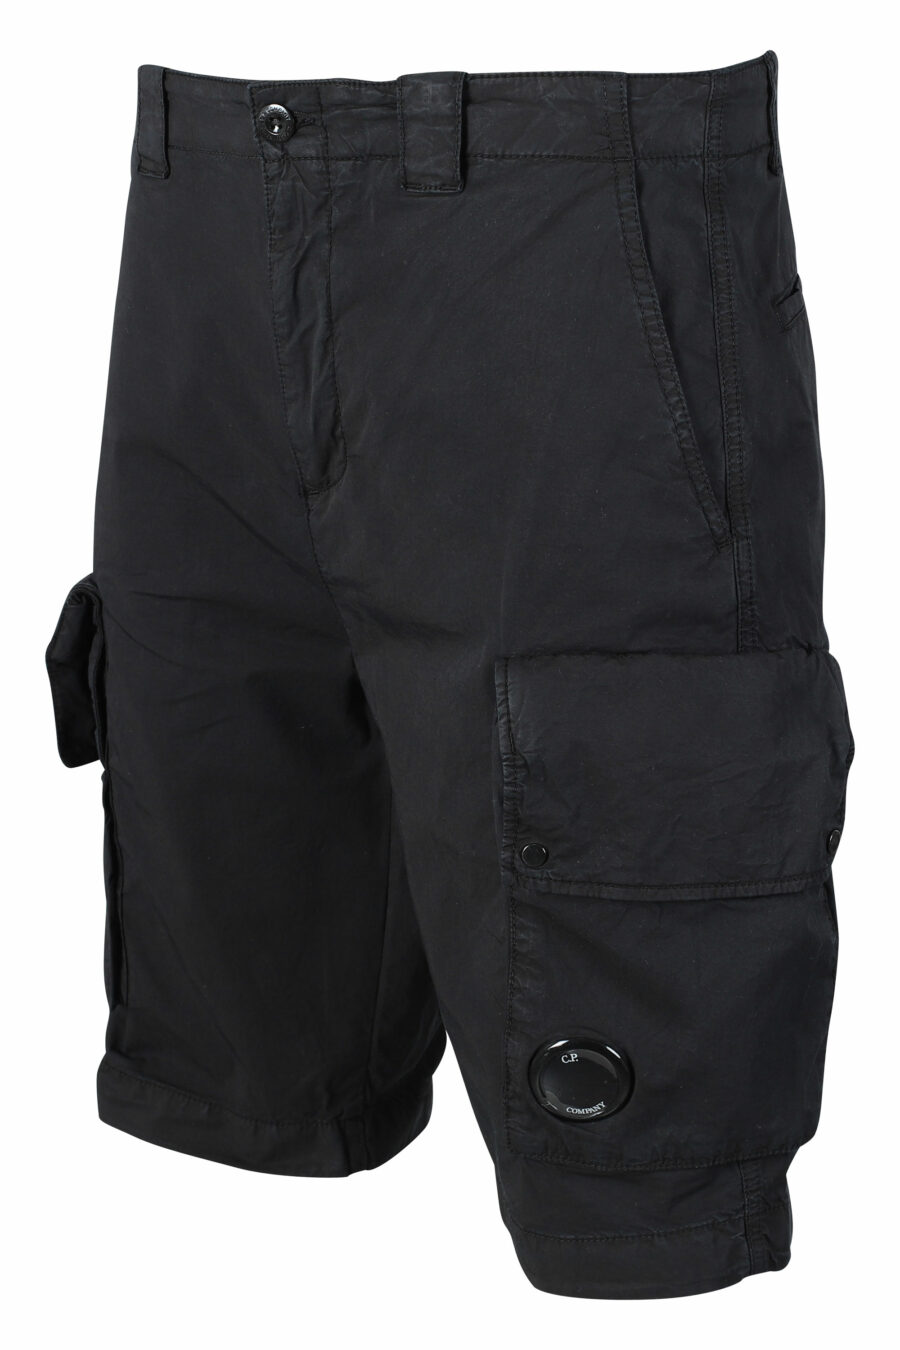 Schwarze Shorts mit Seitentaschen und rundem Mini-Logo - IMG 9483